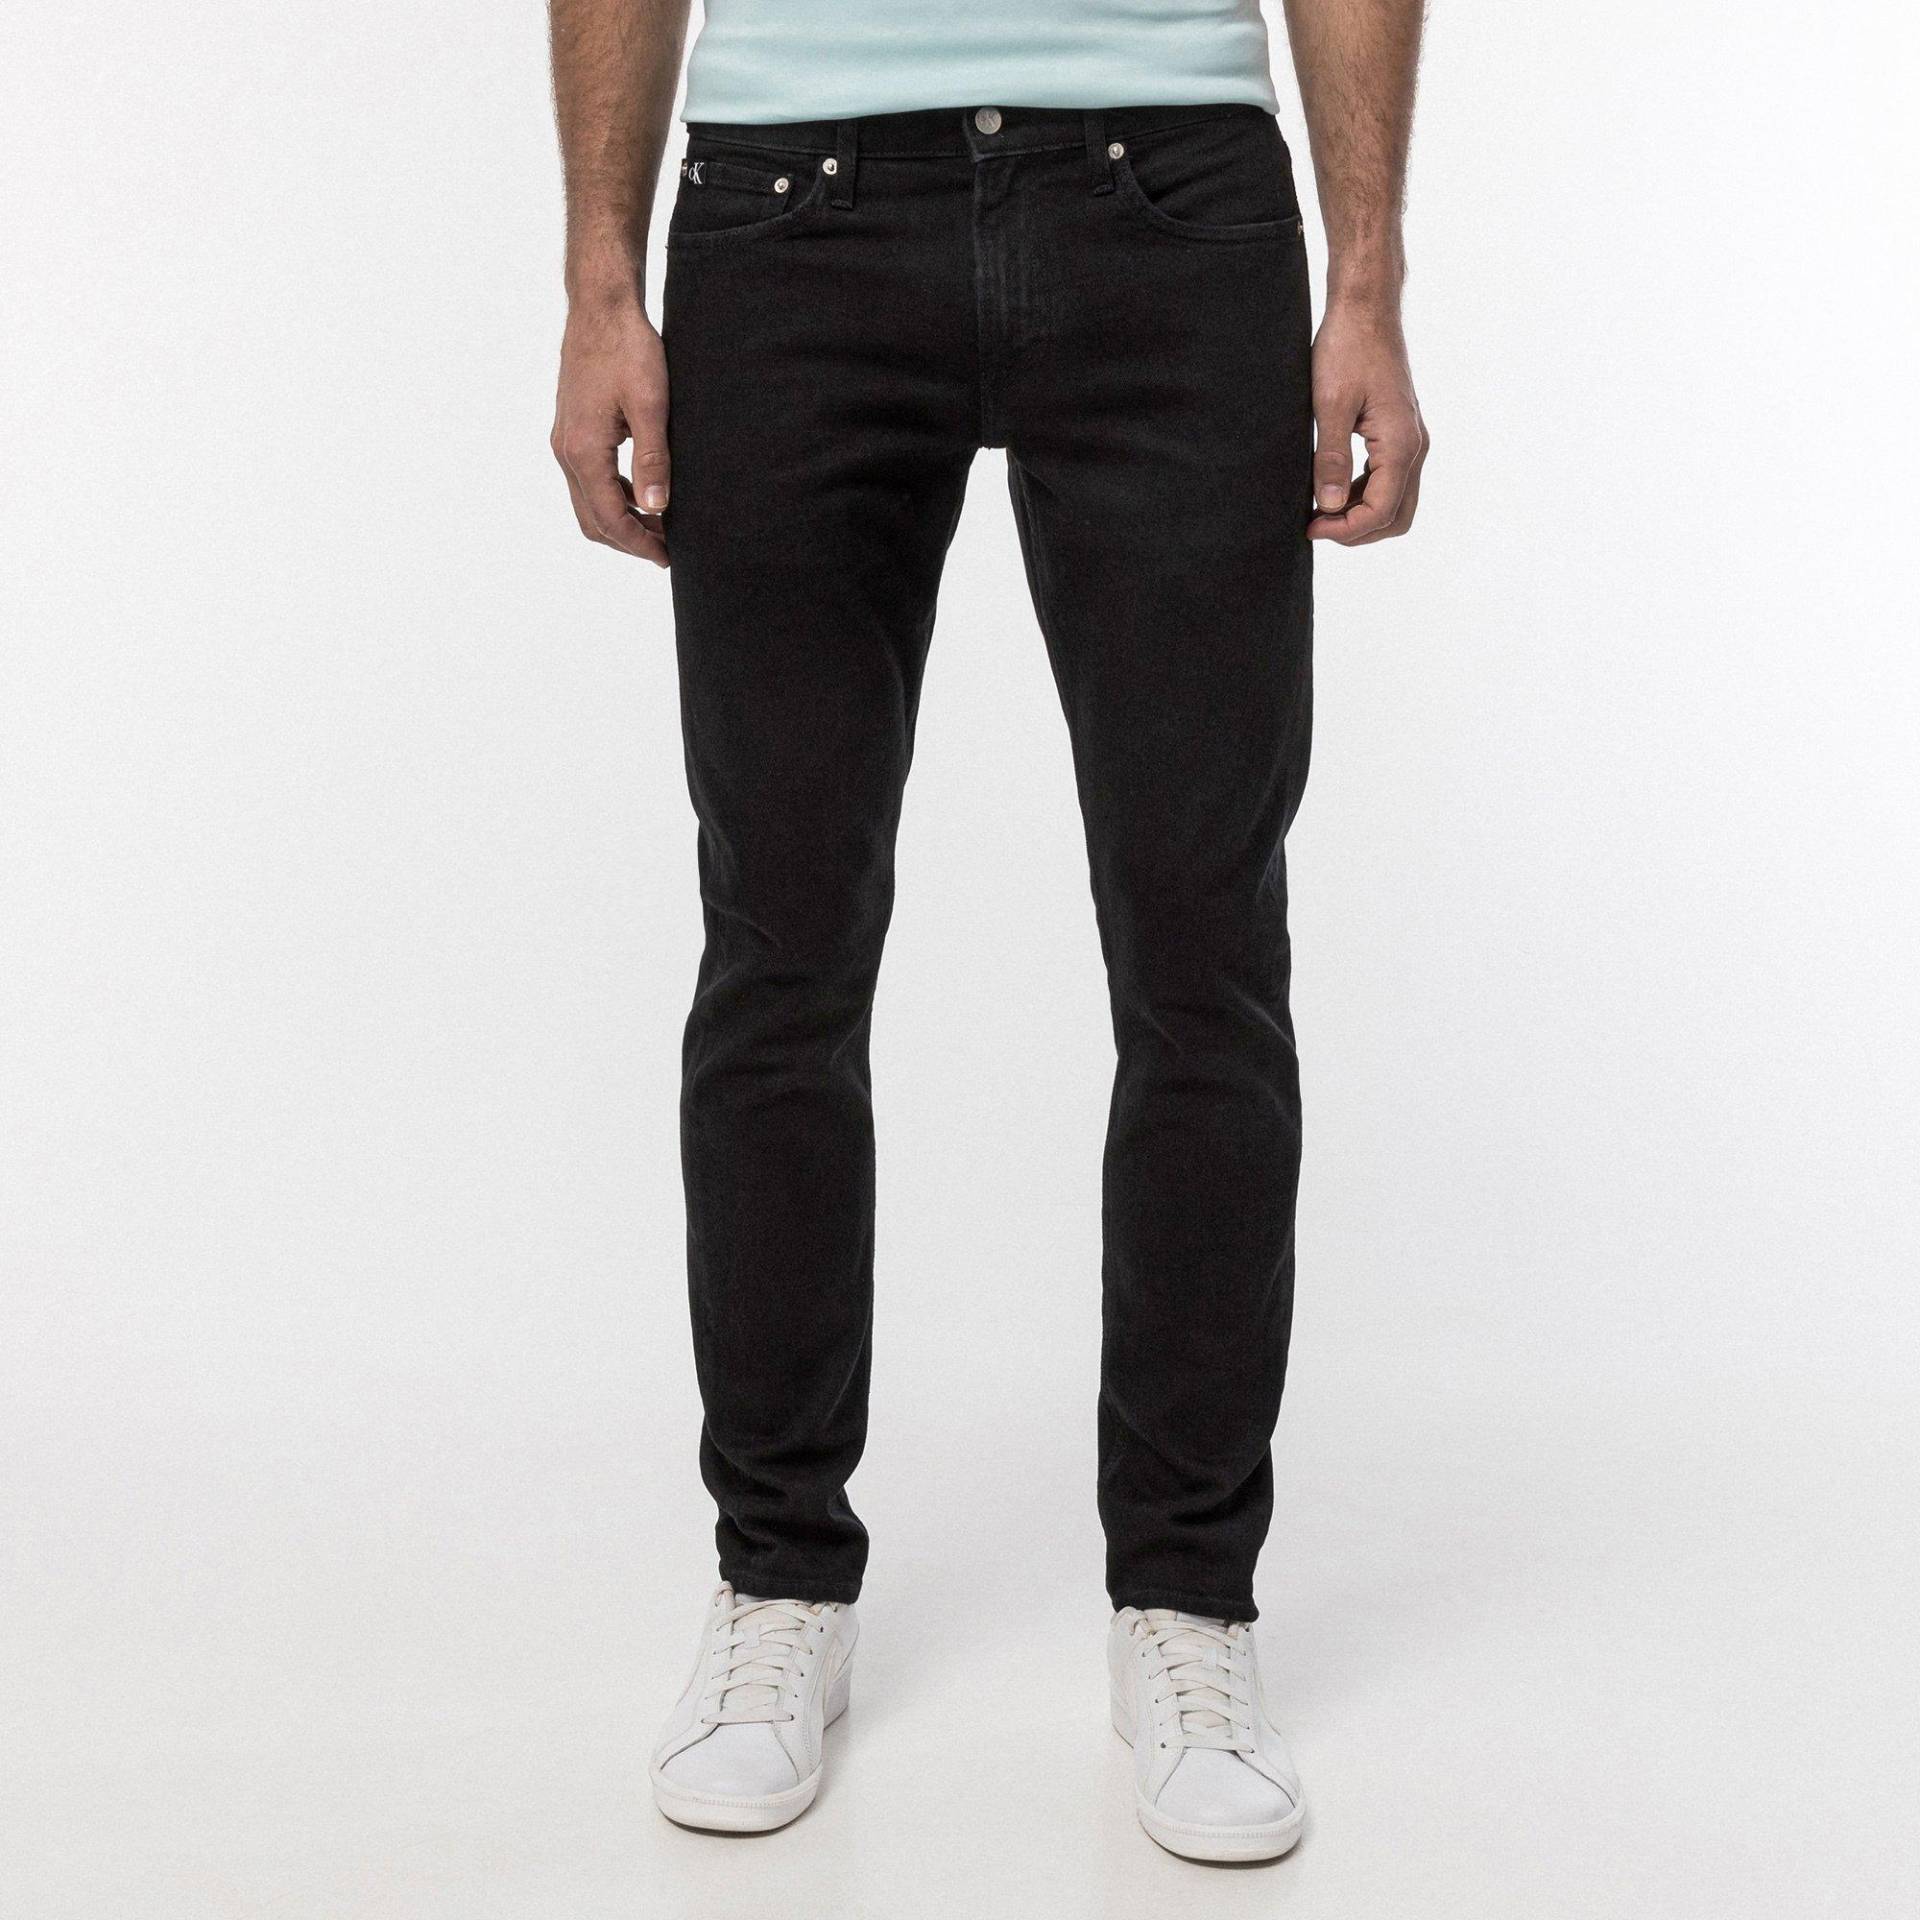 Jeans, Slim Fit Herren Black L34/W31 von Calvin Klein Jeans